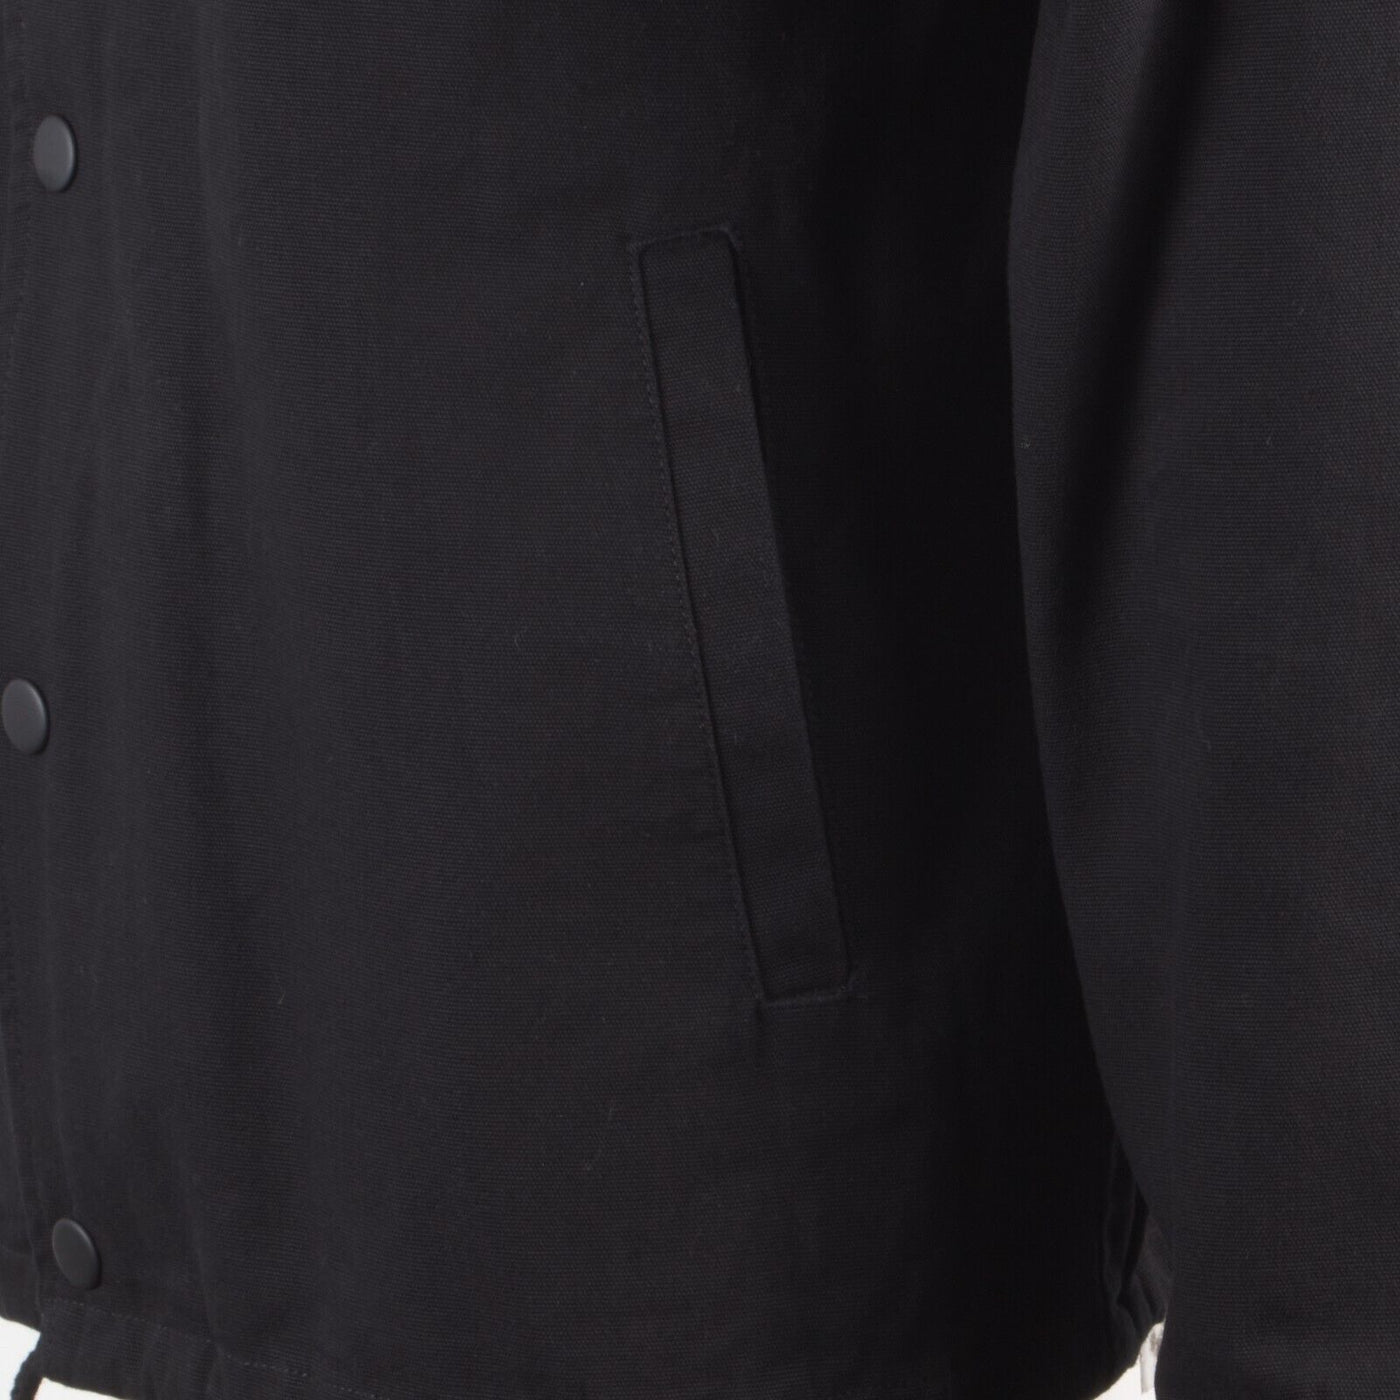 Vans Men's Black Torrey Skate Snap On Button Jacket